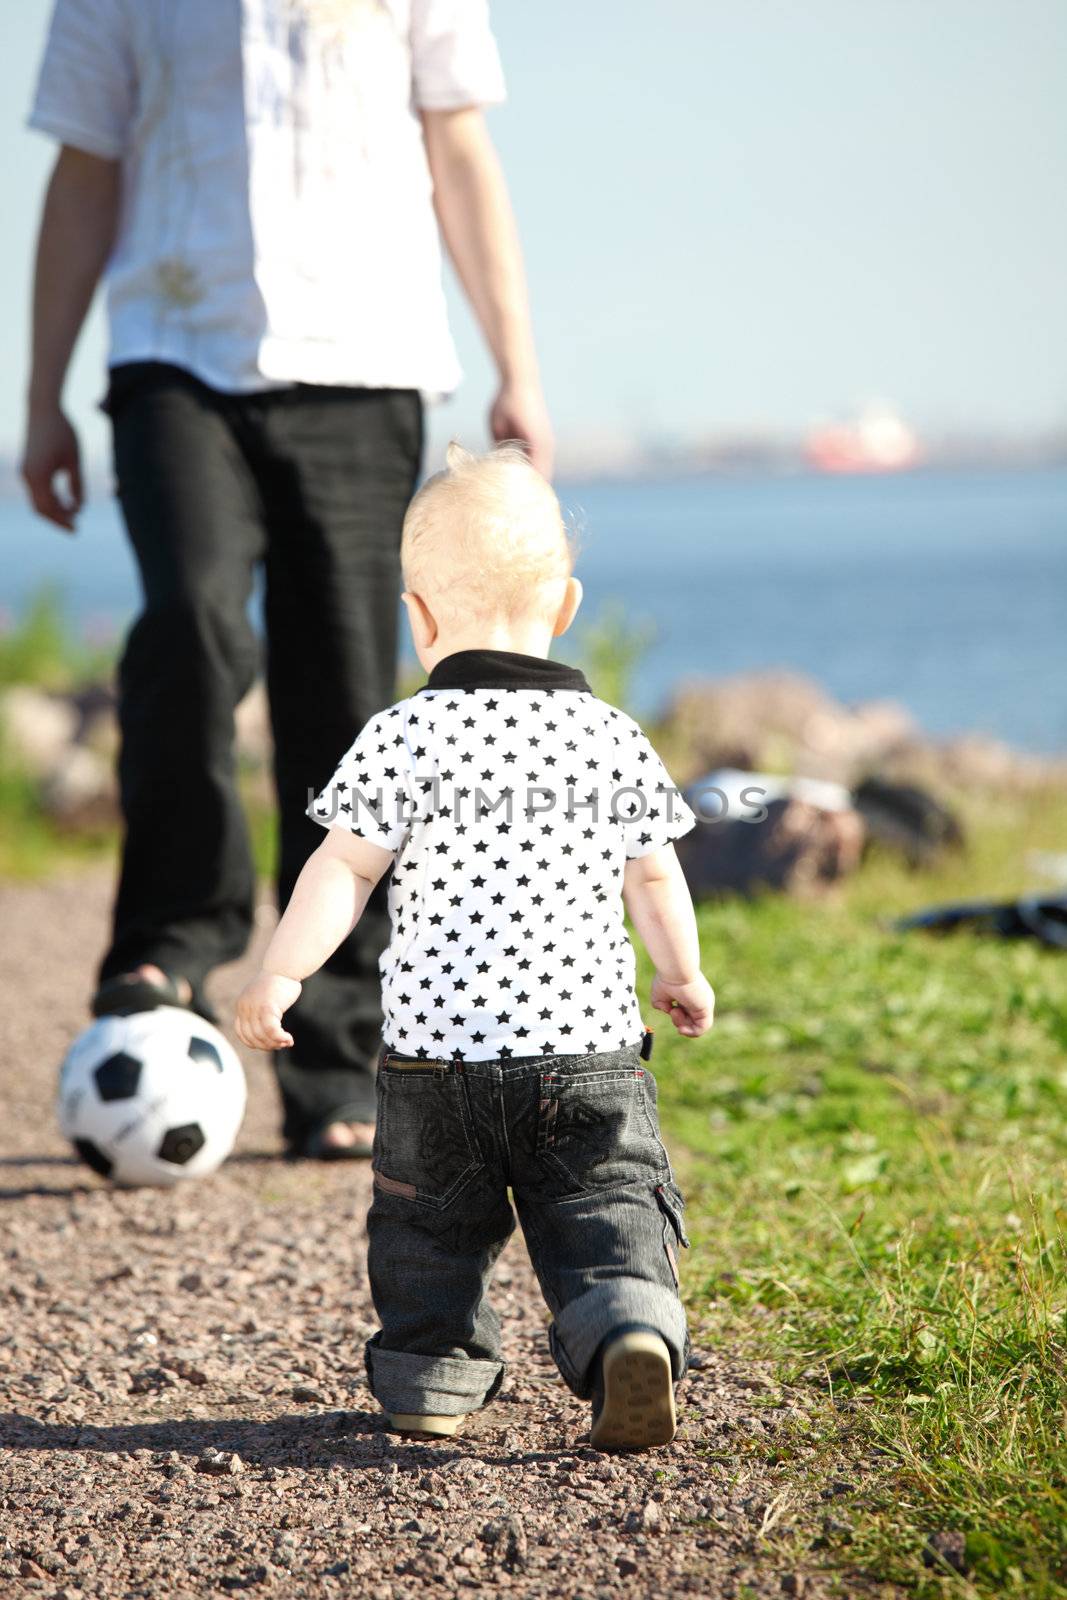 little boy play soccer outdoor